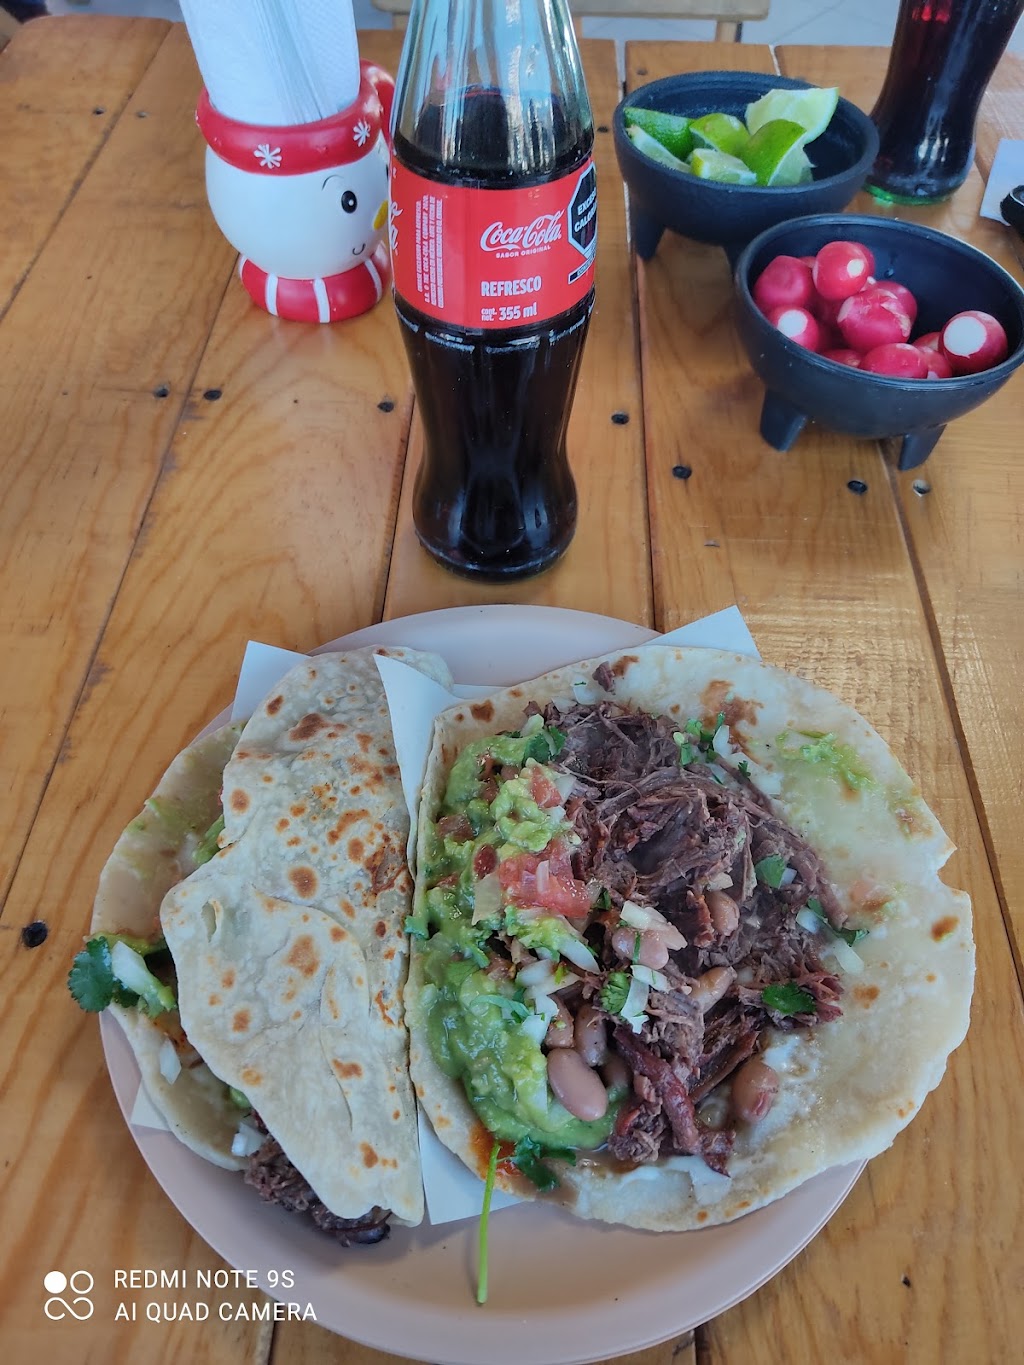 Tacos El Gran Perron | Blvd. Alfredo Bonfil, Amp ejido Mazatlán, 22707 Rosarito, B.C., Mexico | Phone: 661 133 8729